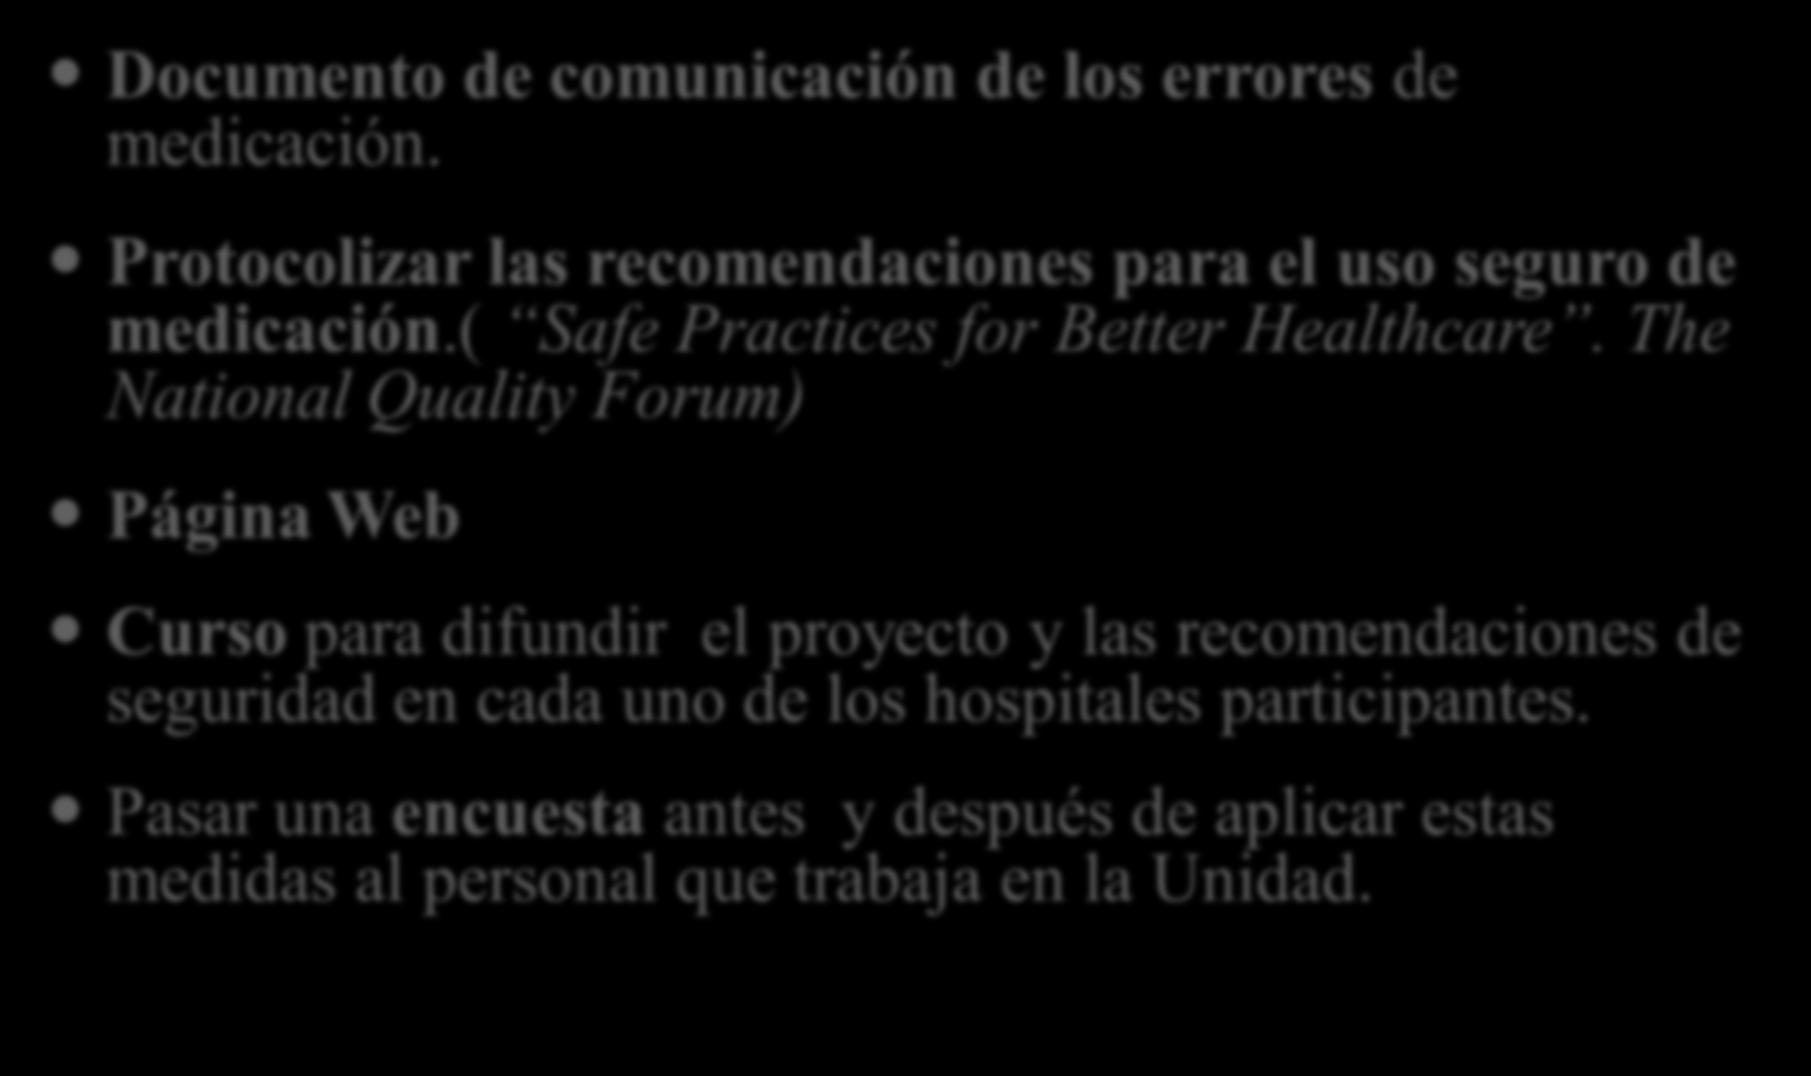 Material y métodos Documento de comunicación de los errores de medicación. Protocolizar las recomendaciones para el uso seguro de medicación.( Safe Practices for Better Healthcare.